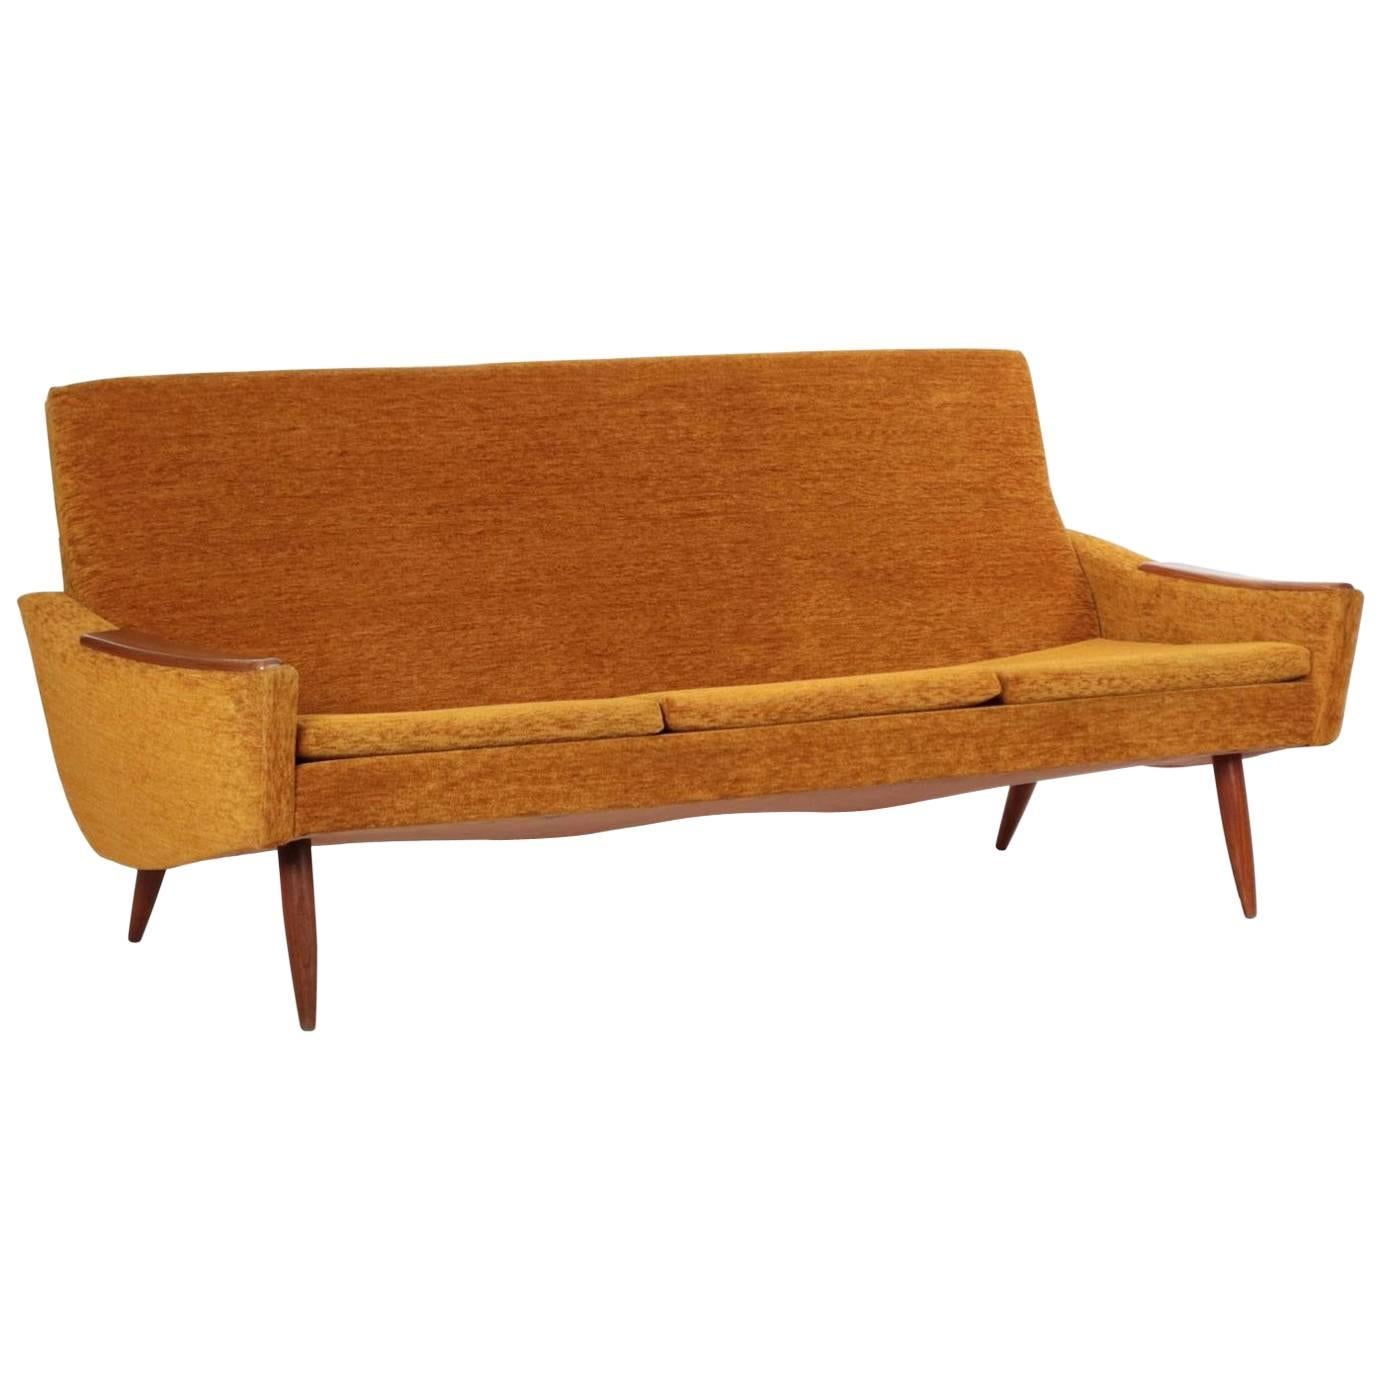 Scandinavian Modern Orange Upholstered Sculpted Walnut Sofa, circa 1950s-1960s